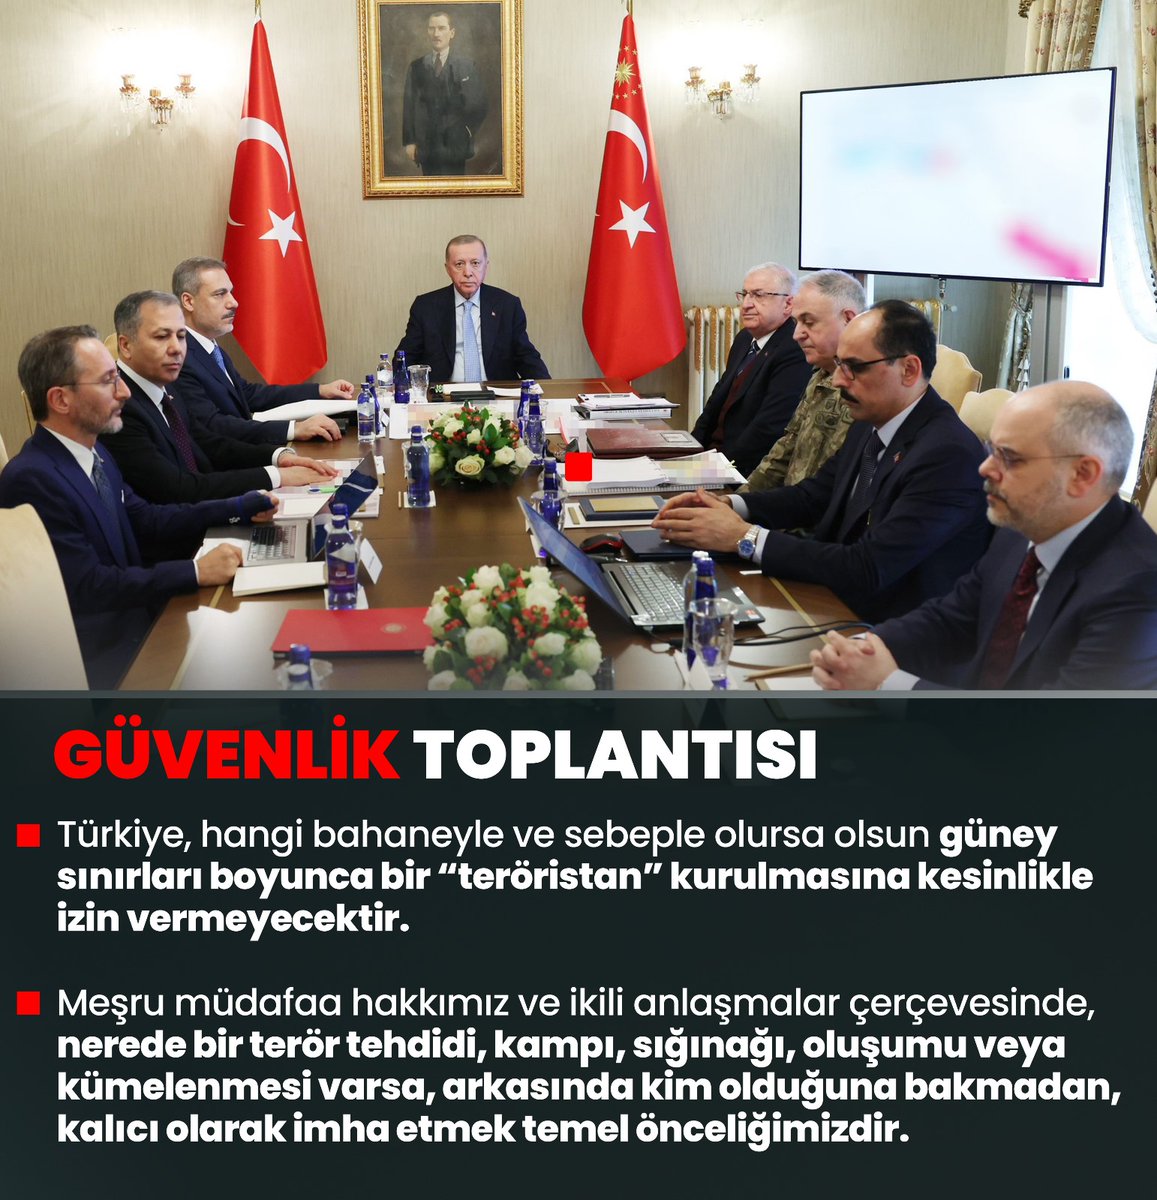 Genel Başkanımız ve Cumhurbaşkanımız Sn.Recep Tayyip Erdoğan: 

'Türkiye yüzyılı hedeflerimizin önünü kesmek için kurulan tuzaklara maşalık yapanları da,onların iplerini ellerinde tutanları da hüsrana uğratmakta kararlıyız.'

#GüvenlikToplantısı